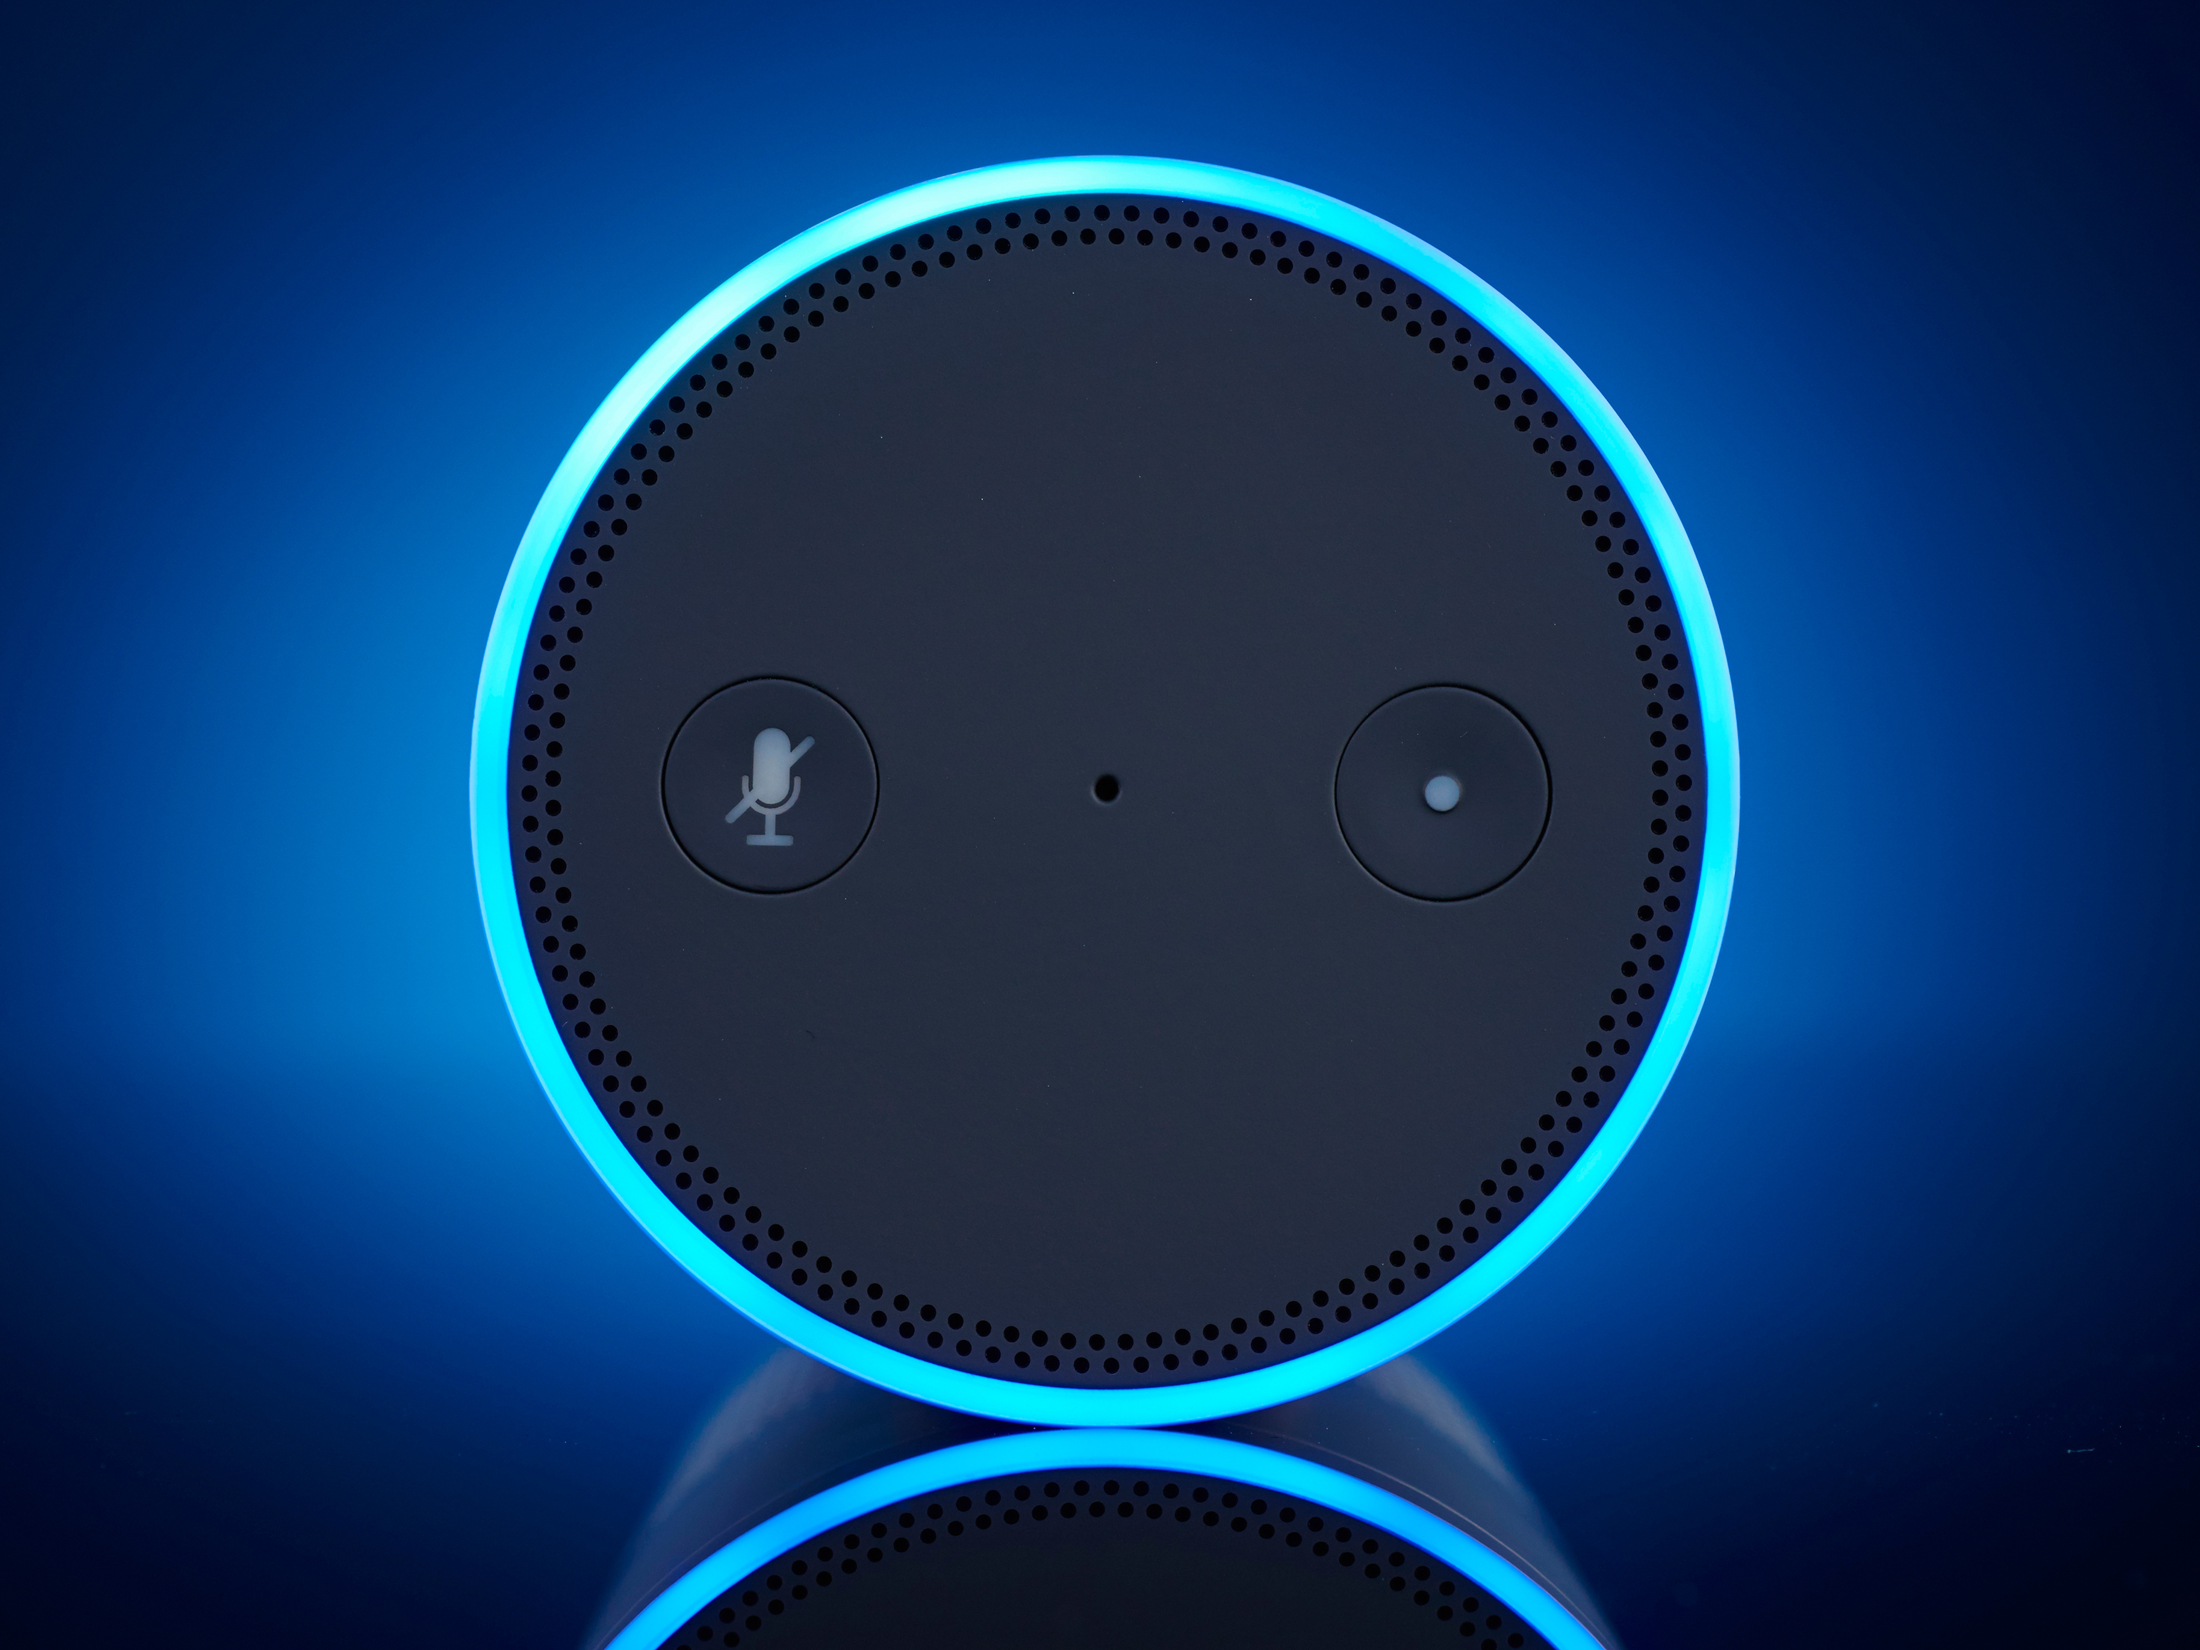 An Amazon Echo smart speaker.